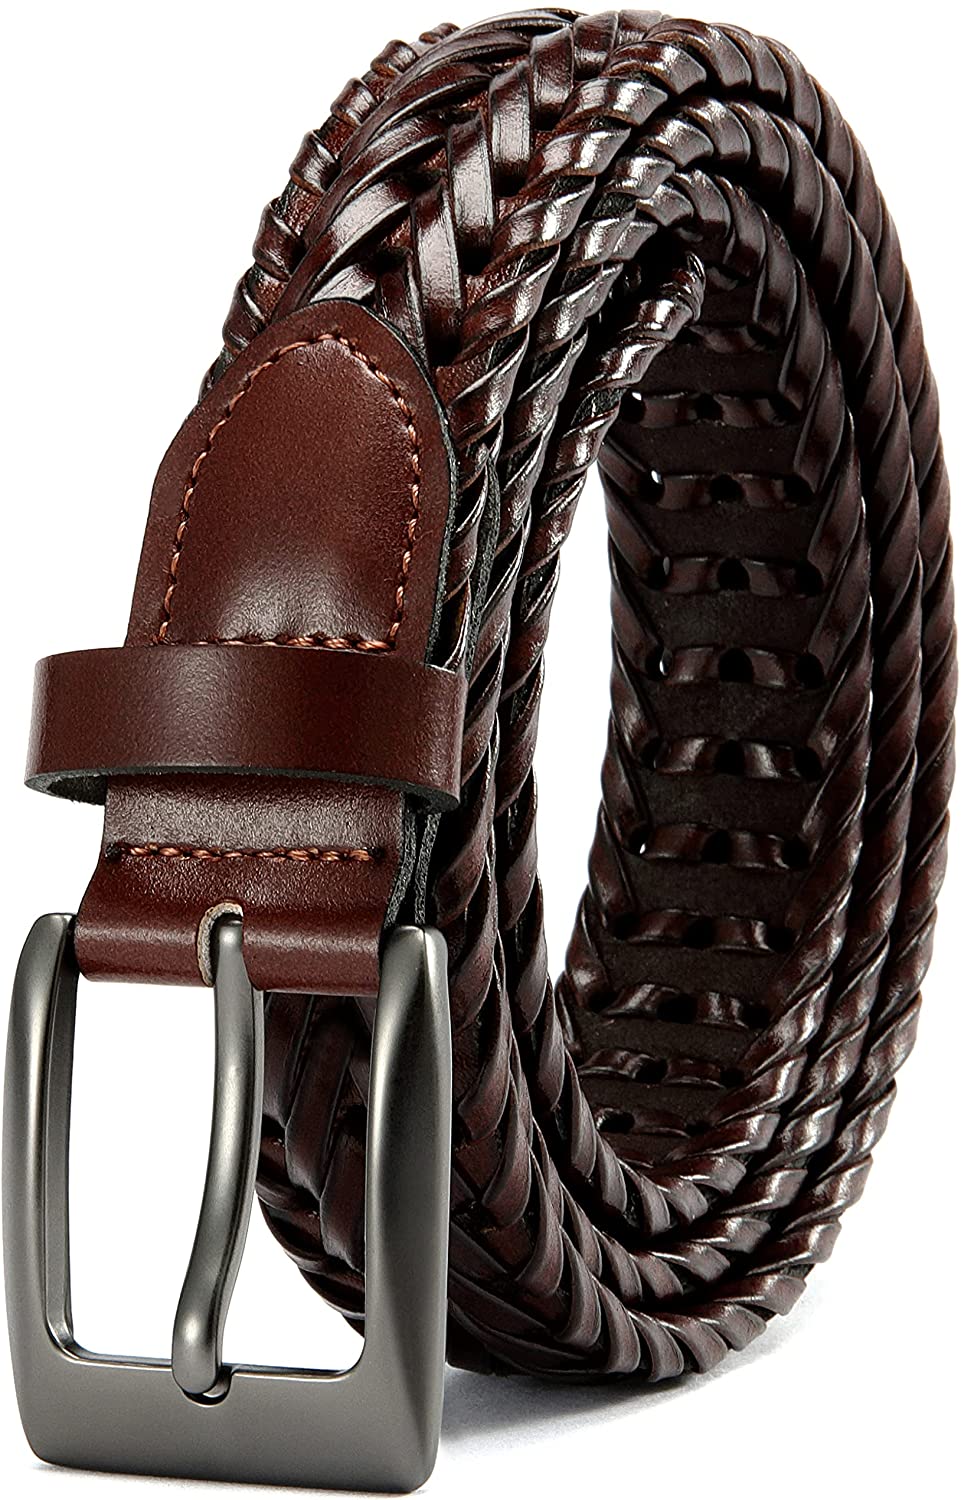 Mens Braided Belt, Braided Leather Belts for Men 1 1/8, CHAOREN